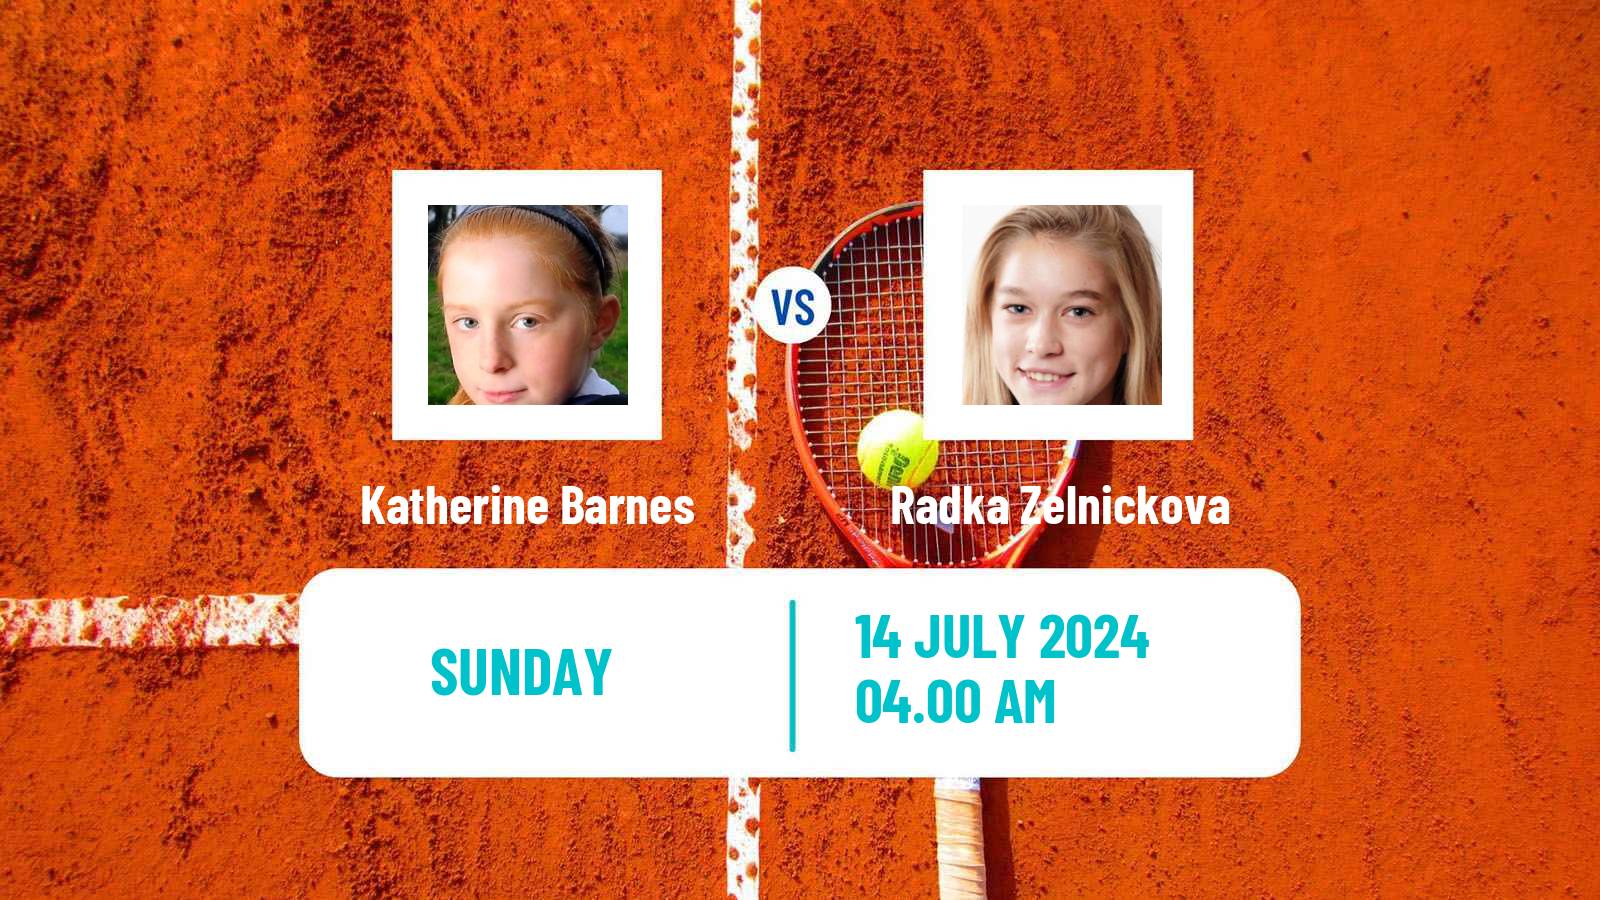 Tennis ITF W15 Grodzisk Mazowiecki Women Katherine Barnes - Radka Zelnickova